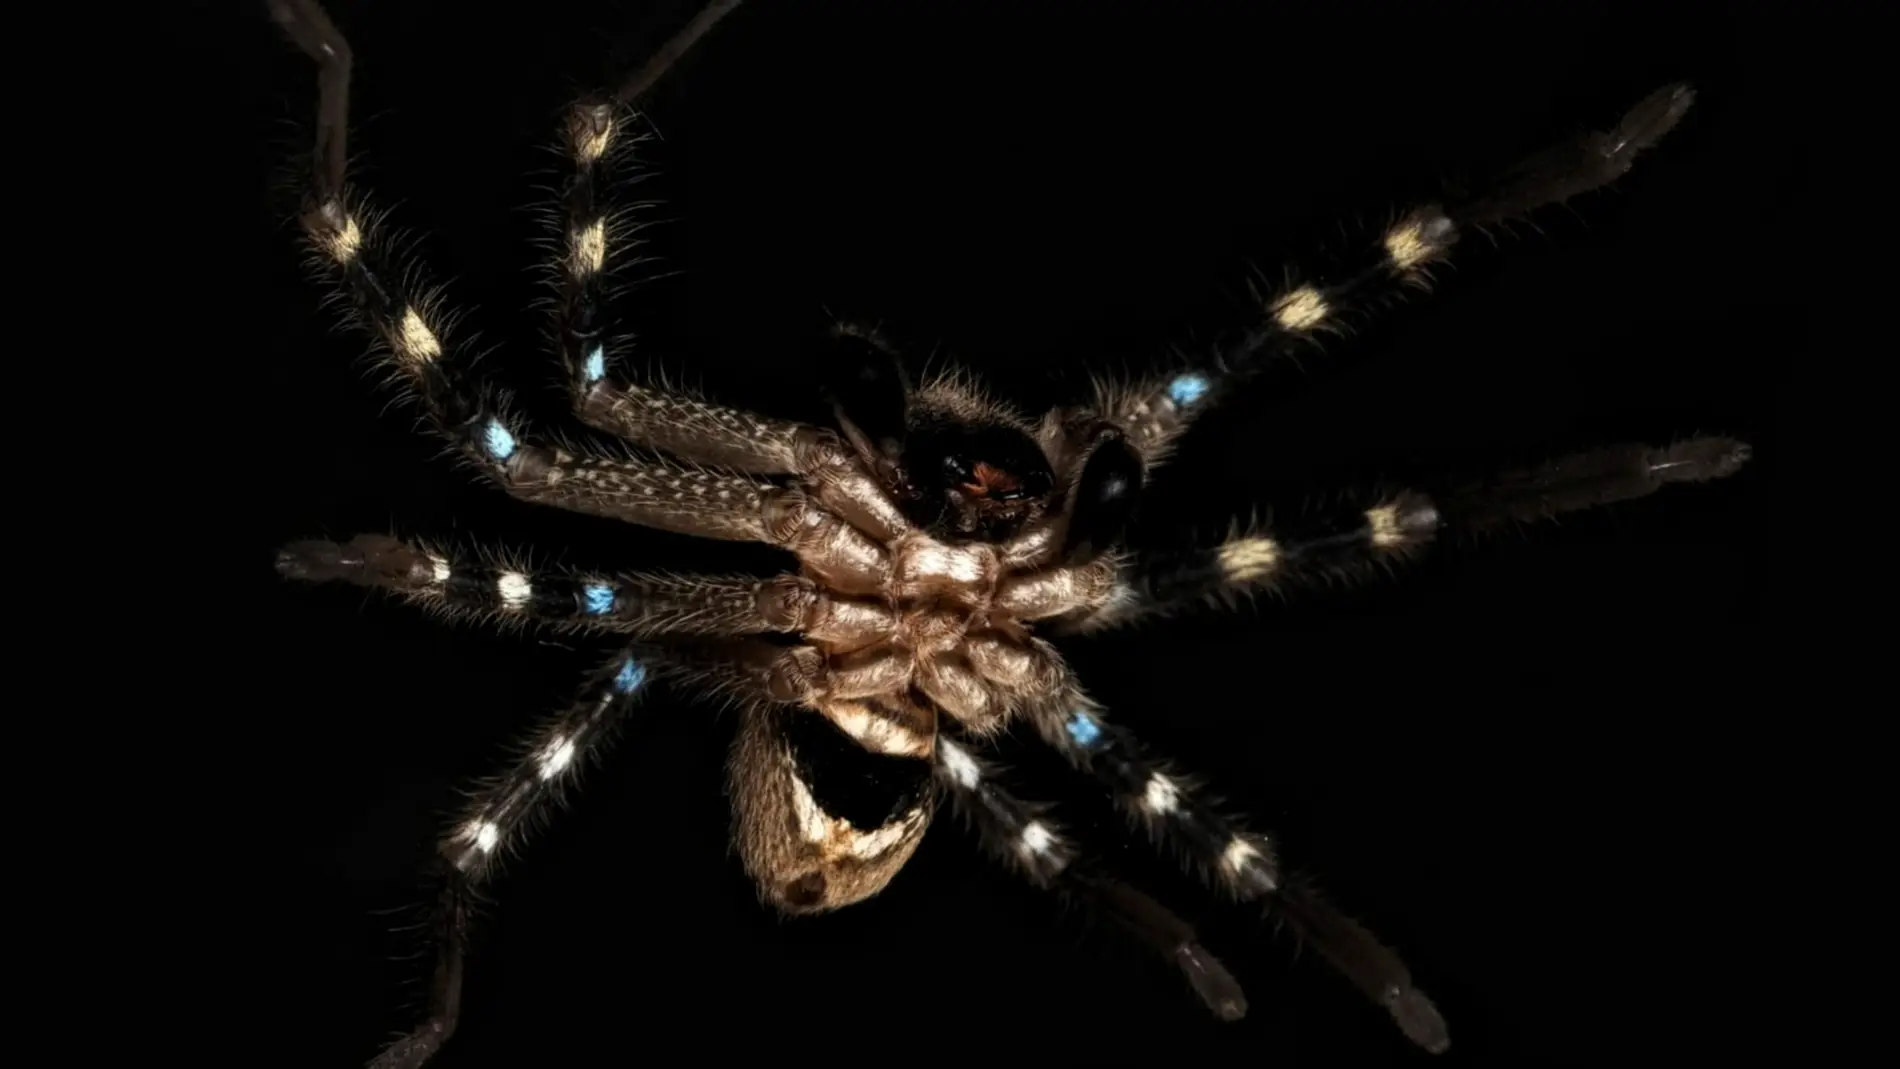 Descubiertas tres especies de aranas inocuas en la region alpina de Australia